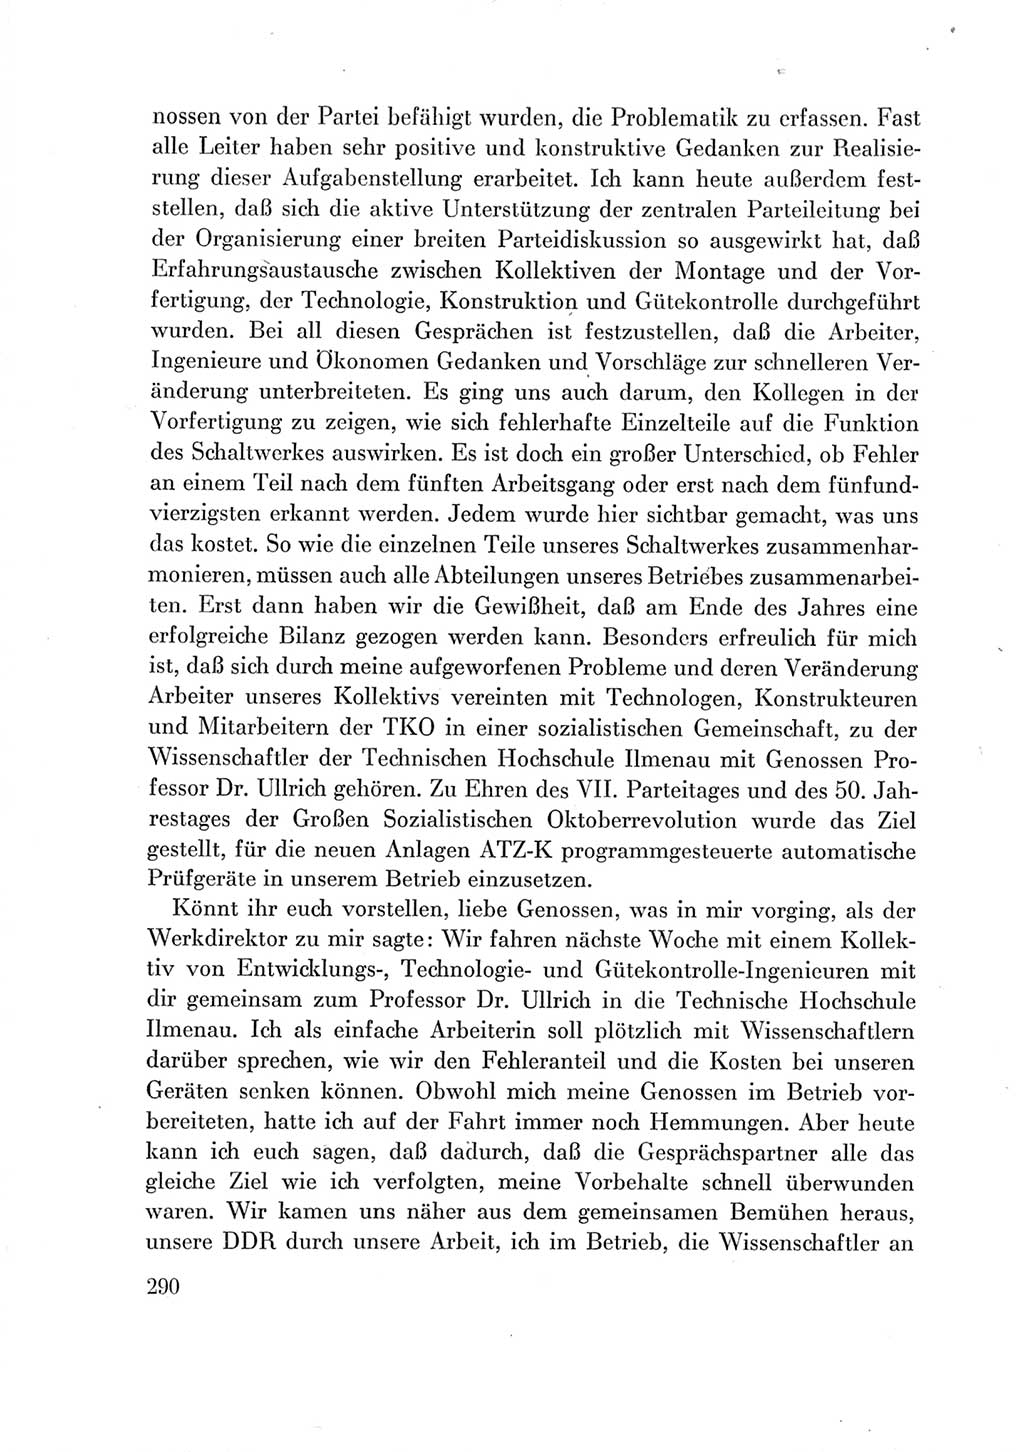 Protokoll der Verhandlungen des Ⅶ. Parteitages der Sozialistischen Einheitspartei Deutschlands (SED) [Deutsche Demokratische Republik (DDR)] 1967, Band Ⅲ, Seite 290 (Prot. Verh. Ⅶ. PT SED DDR 1967, Bd. Ⅲ, S. 290)